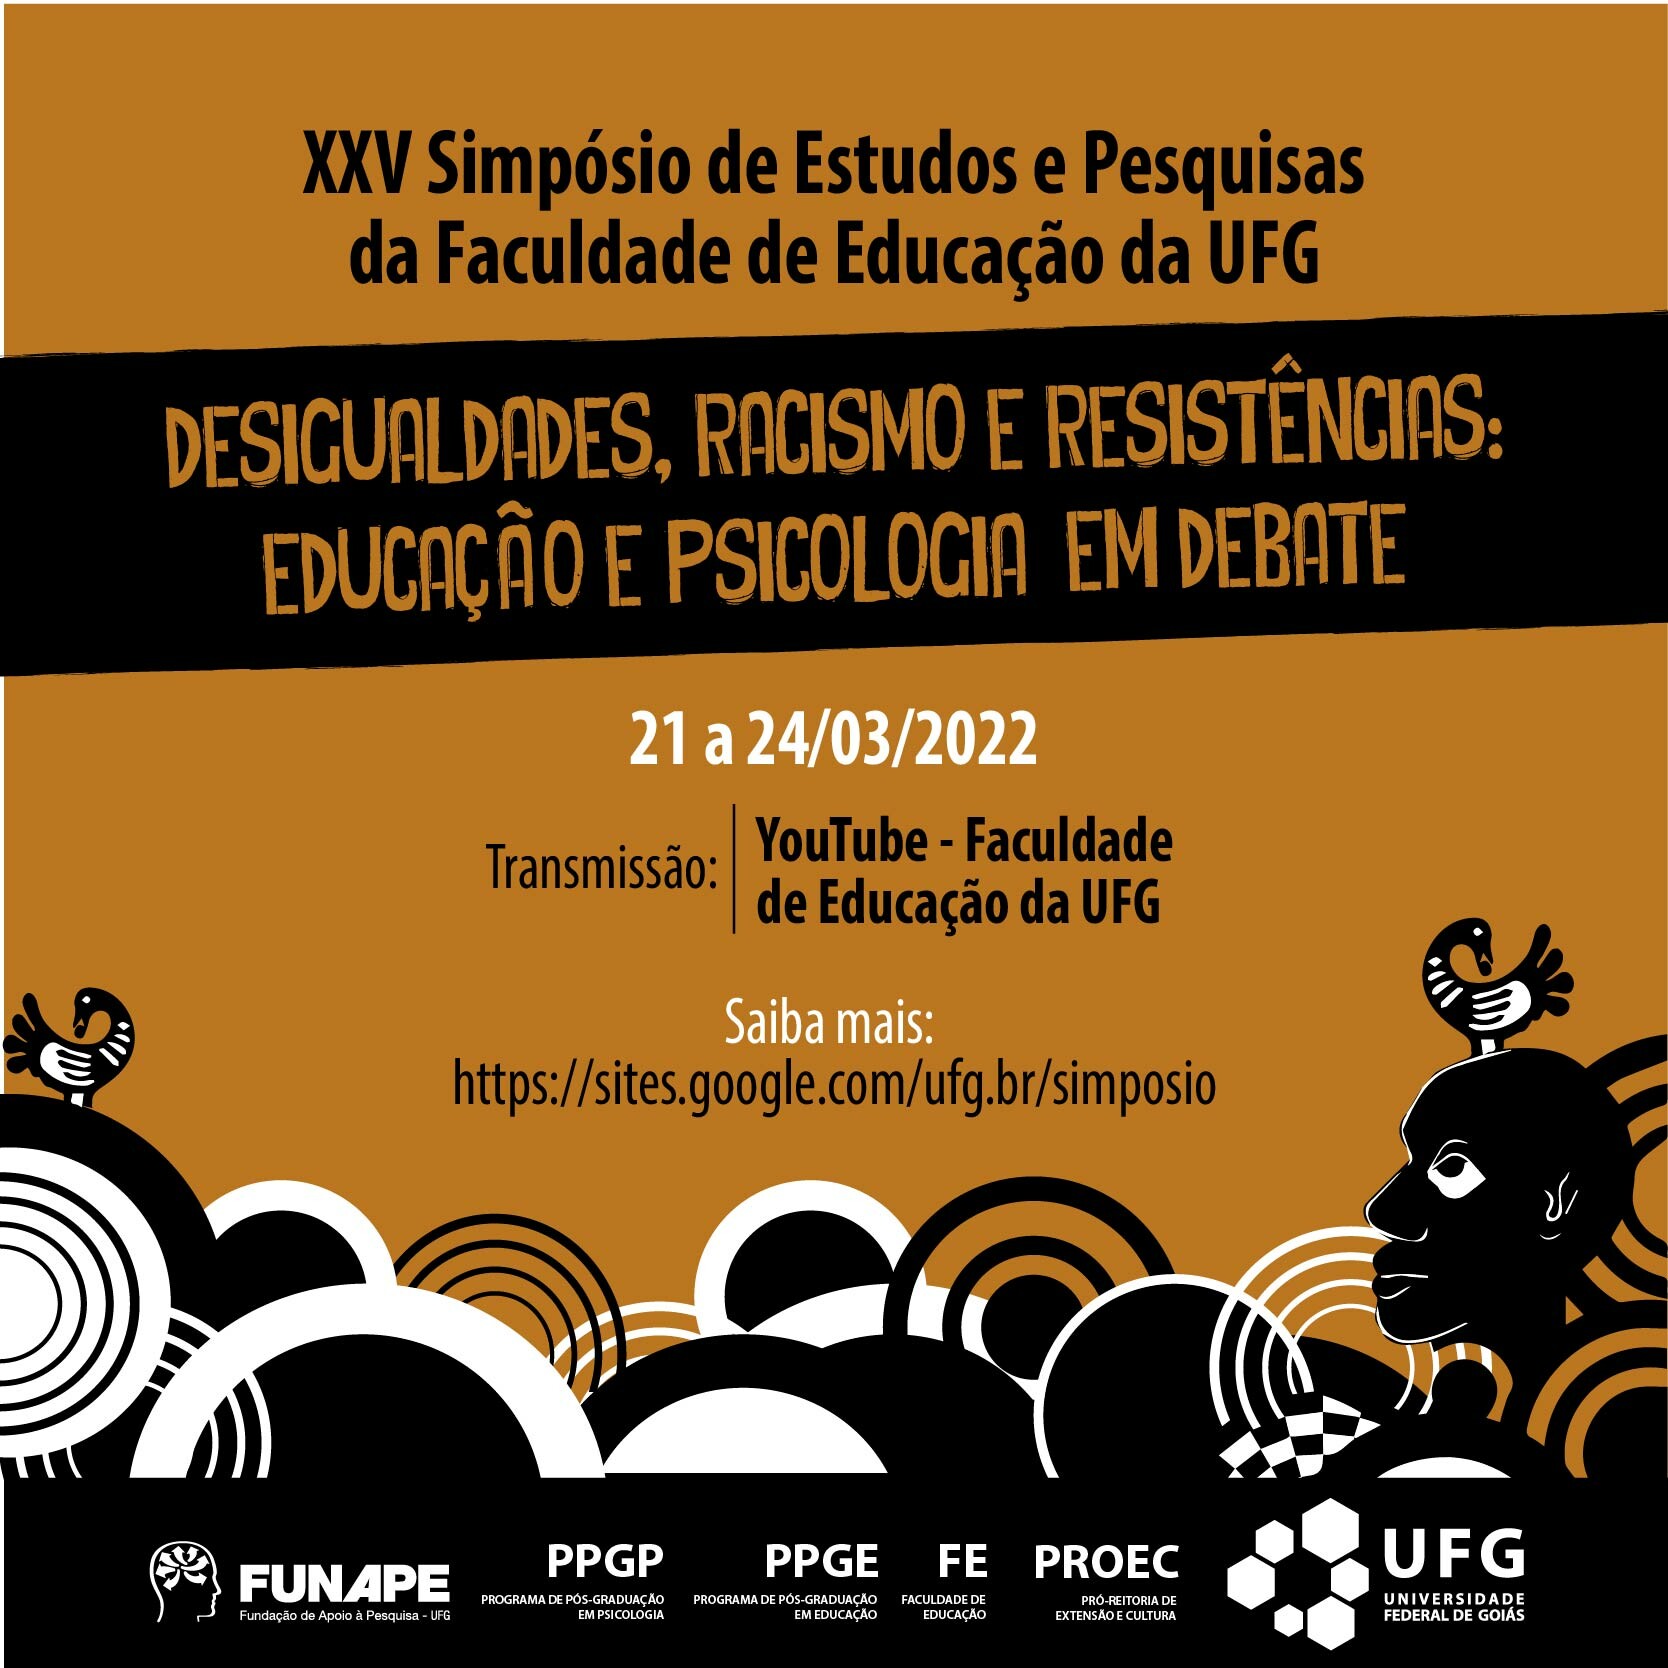 XXV Simpósio de Estudos e Pesquisas da Faculdade de Educação da UFG